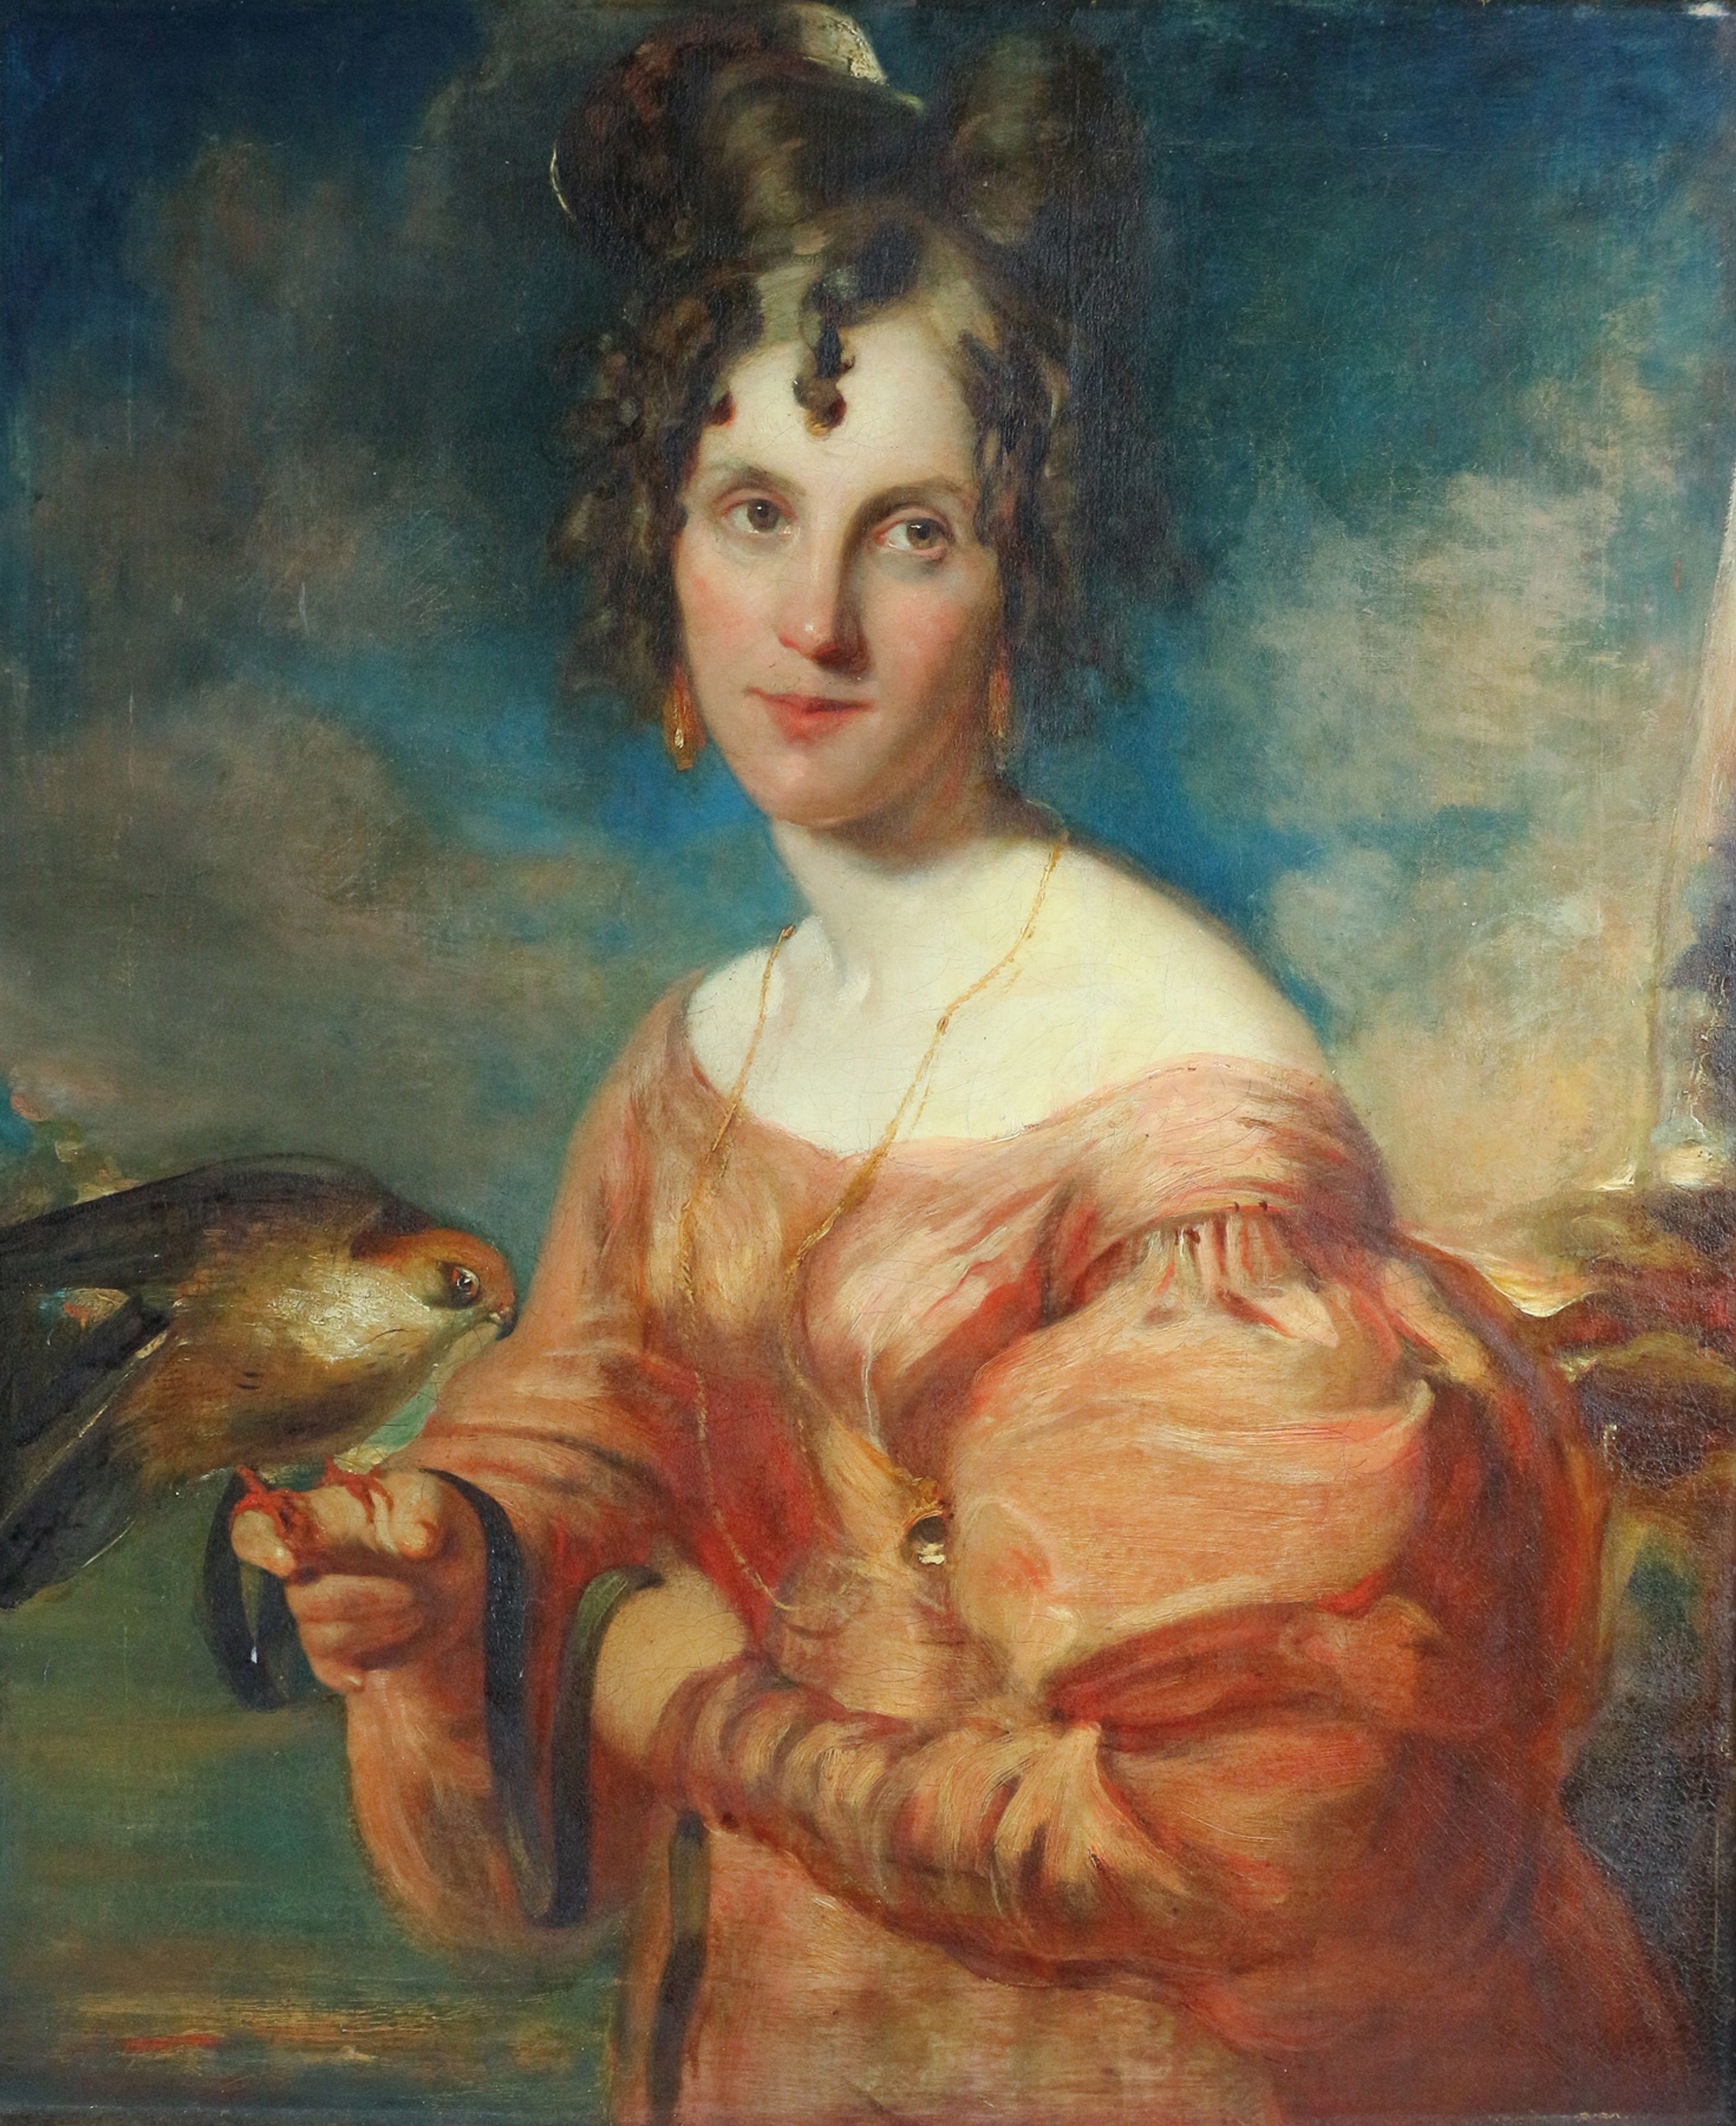 Kunstenaar onbekend, 'Portret van Elizabeth Gould met een vrouwelijke Roodpootvalk (Falco vespertinus)', datering onbekend.